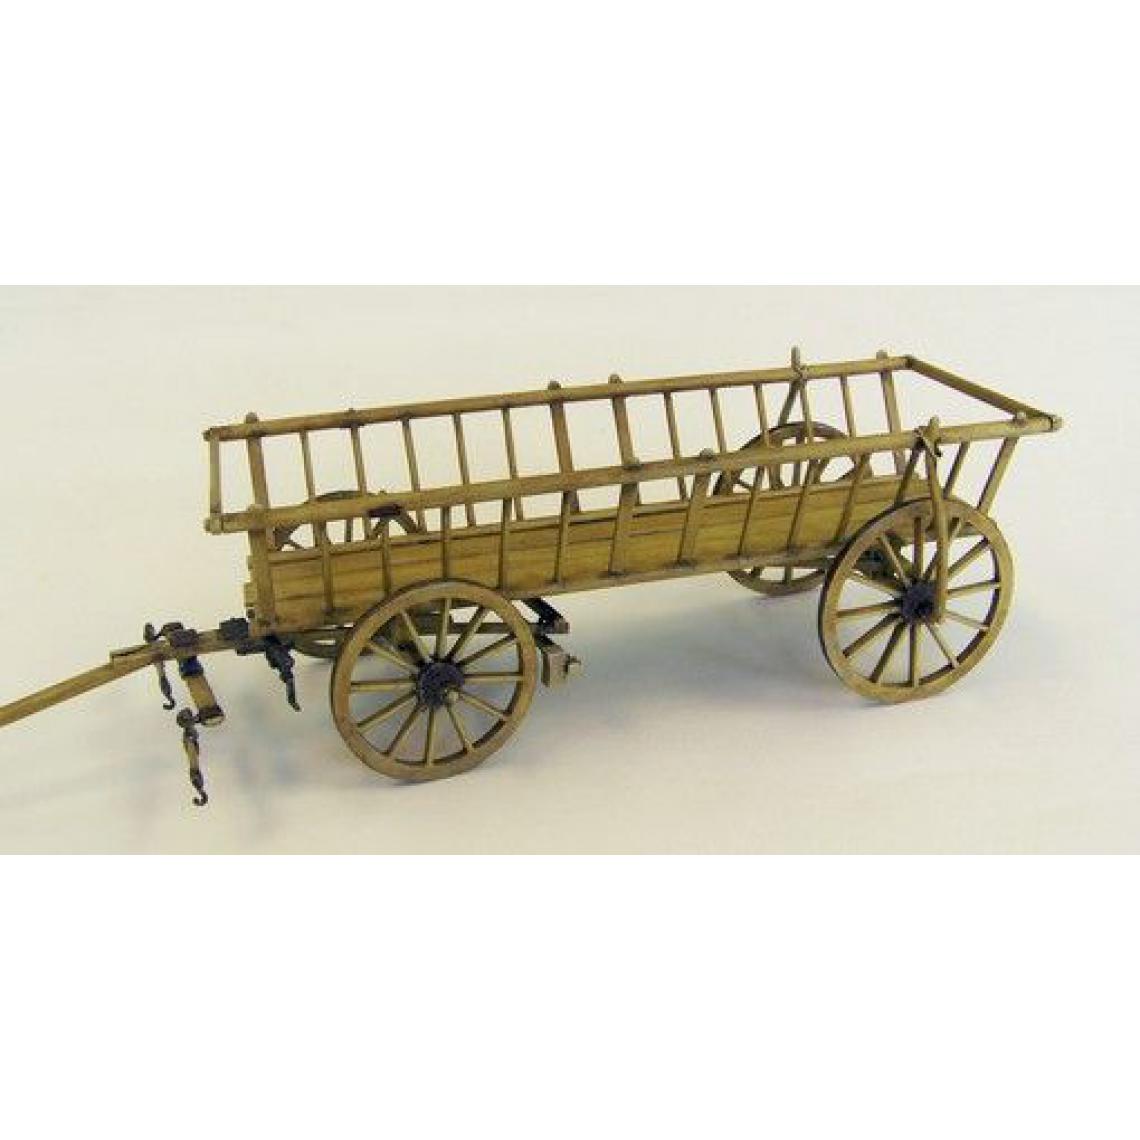 Plus Model - Hay wagon - 1:35e - Plus model - Accessoires et pièces